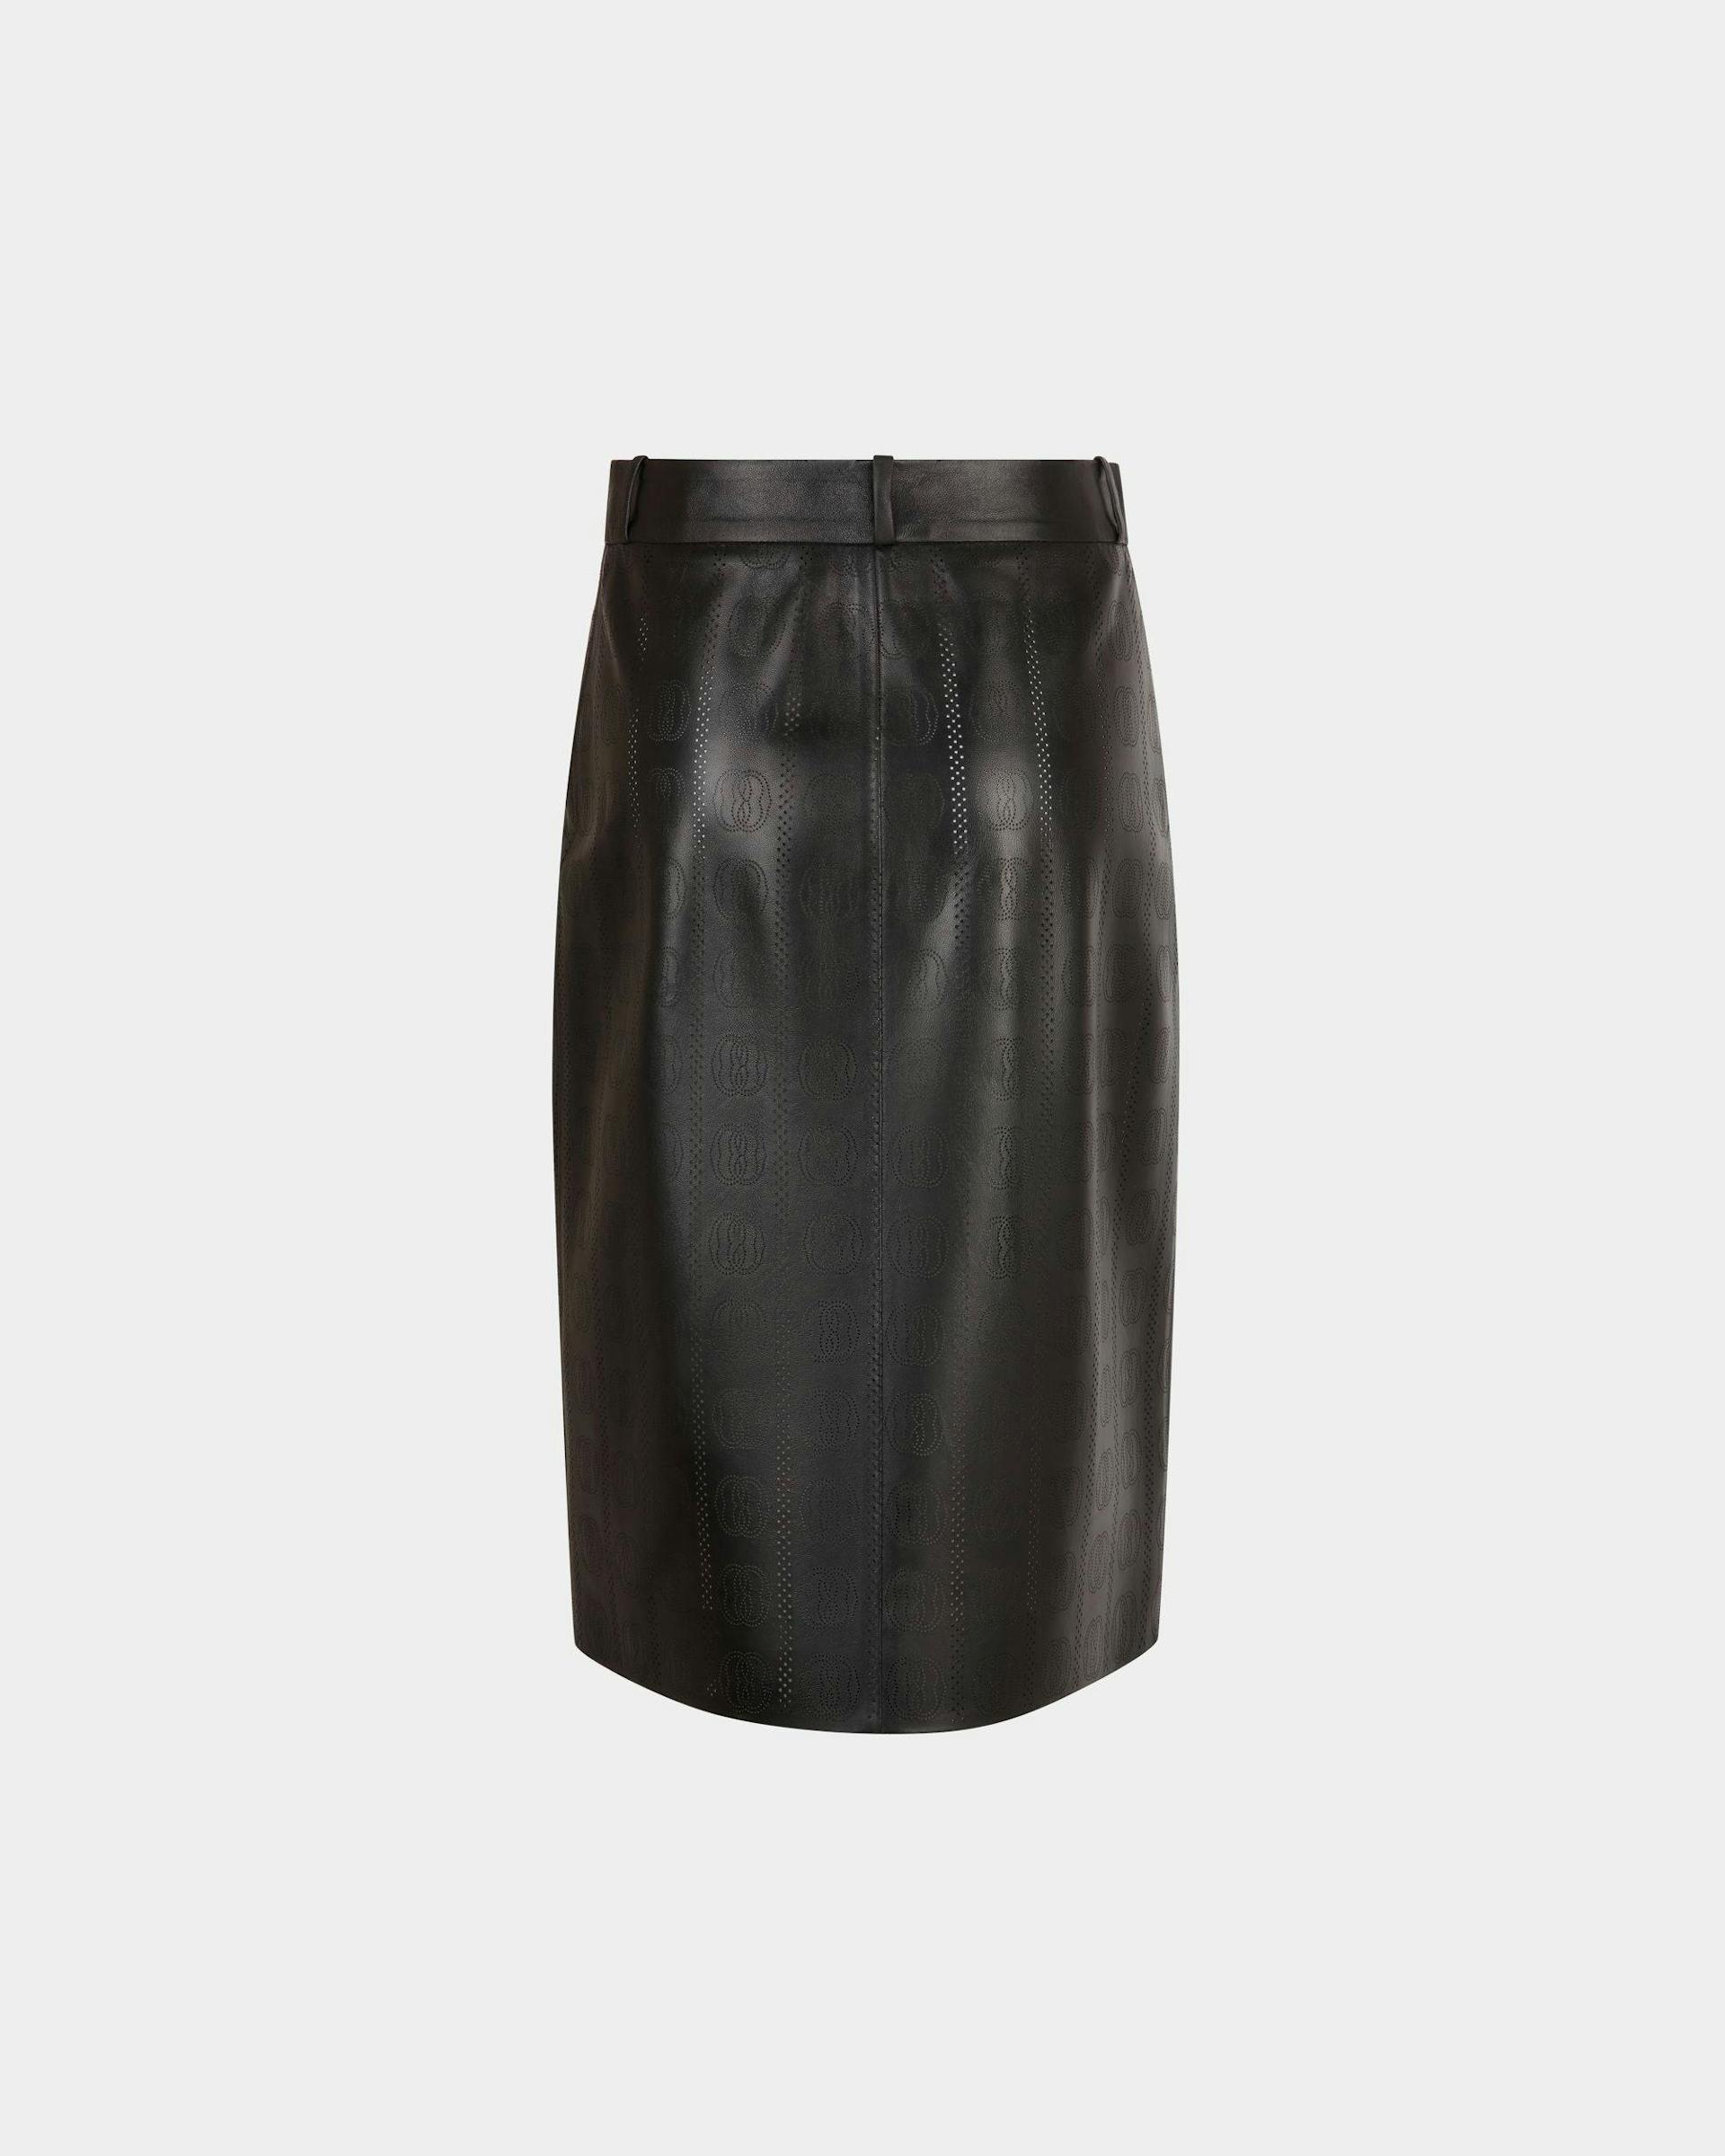 Women's Midi Skirt In Black Leather | Bally | Still Life Back